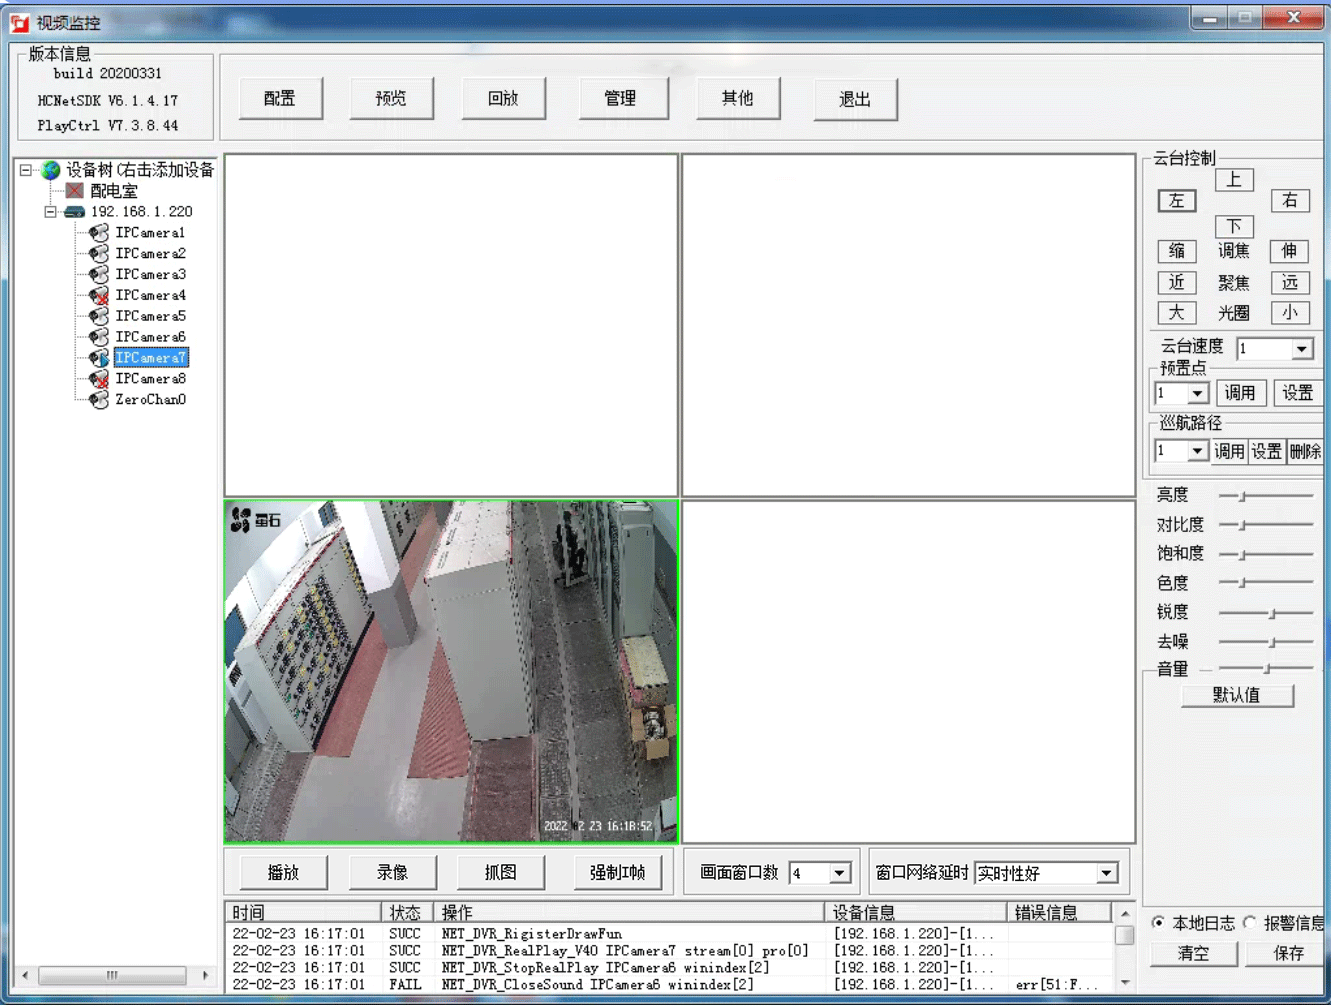 Acrel-2000系列监控系统在亚运手球比赛馆建设10kV供配电工程中的应用